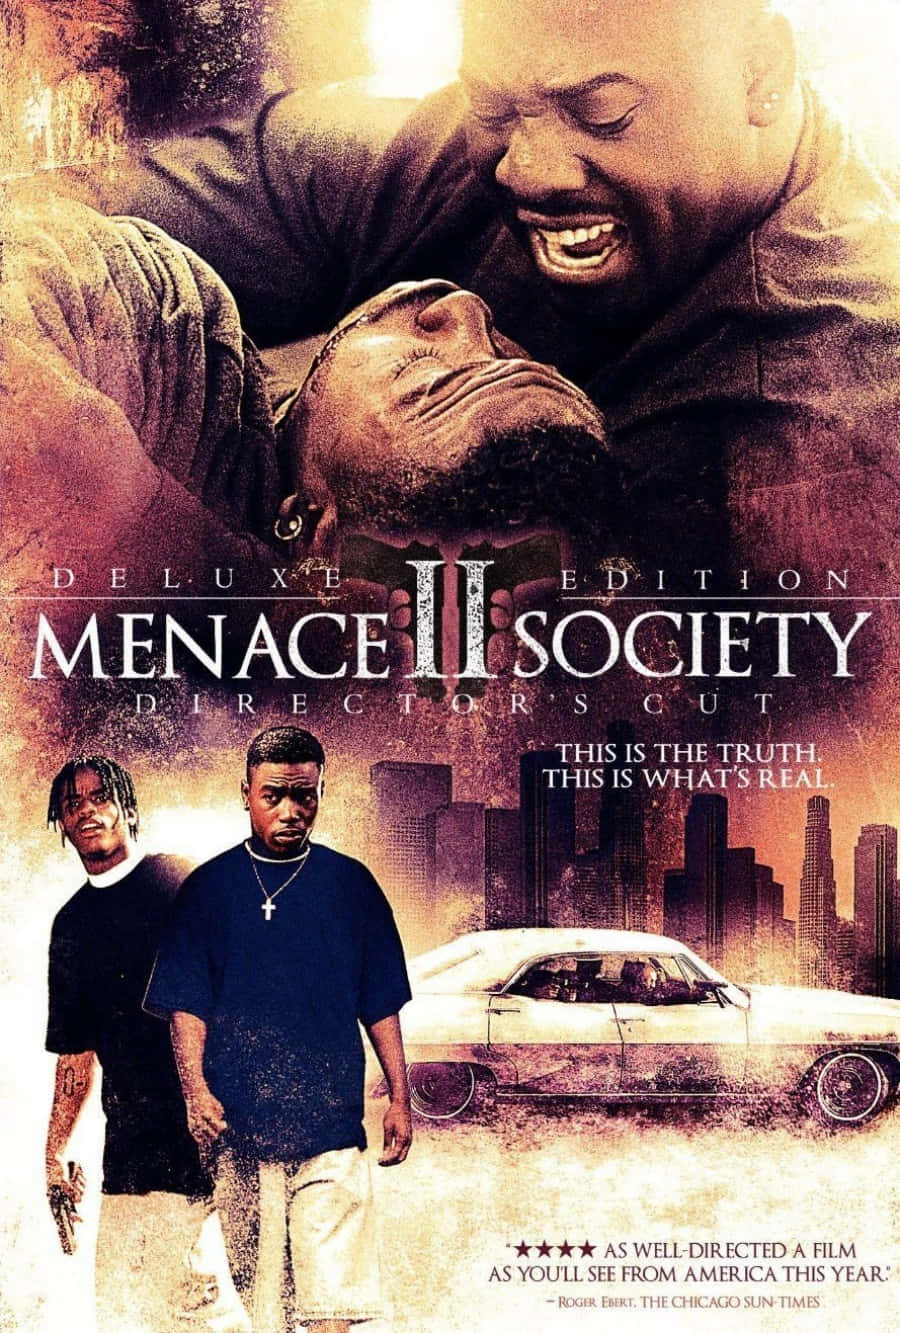 Tapet til Menace II Society-filmen: Et tapet designet til at ligne en filmplakat for den klassiske kultfilm Menace II Society. Wallpaper